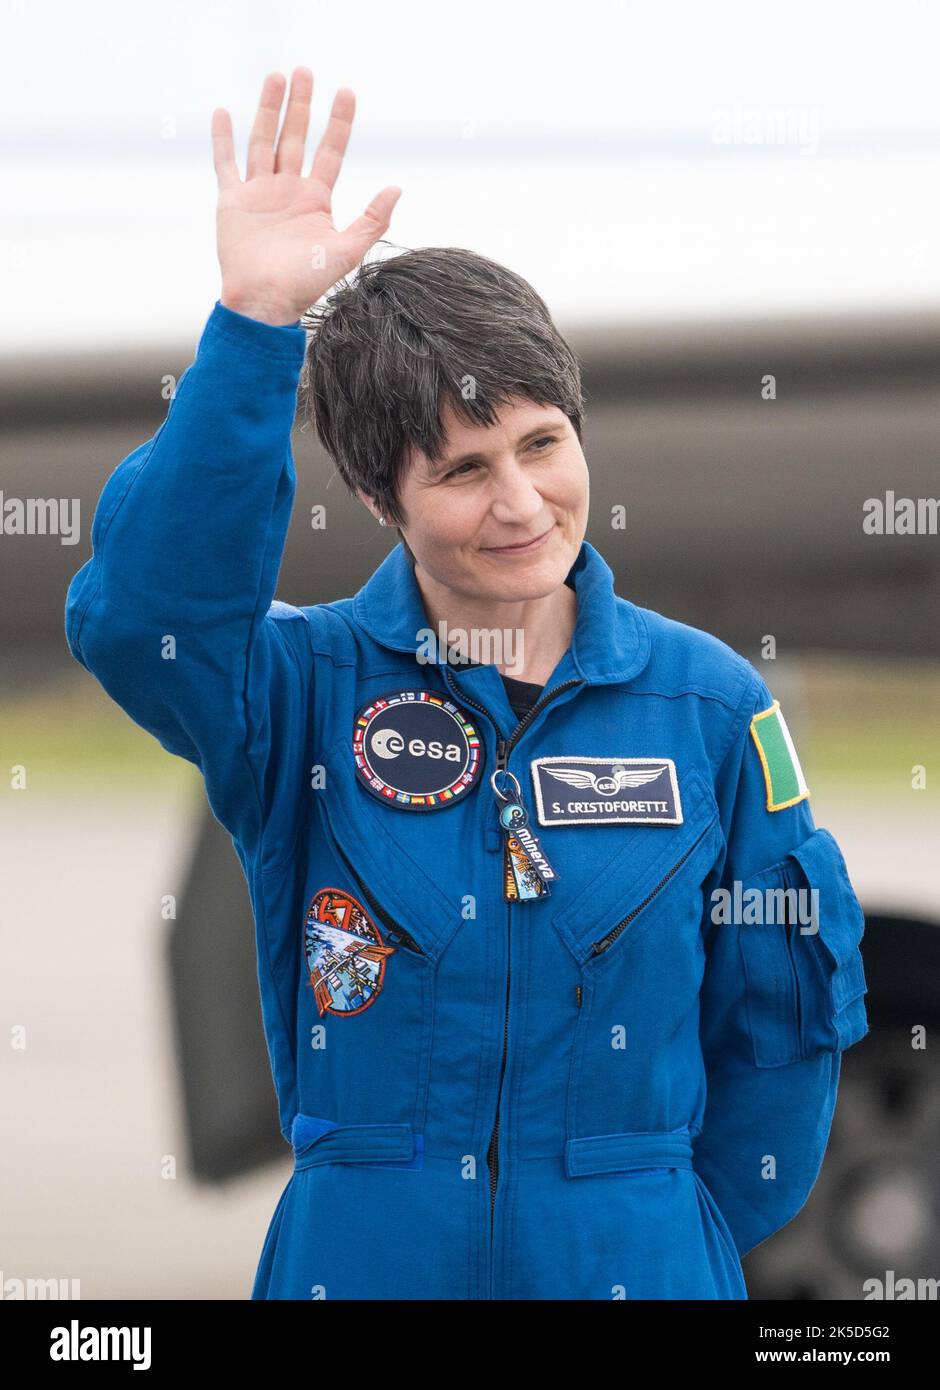 Samantha Cristoforetti, astronauta de la ESA (Agencia Espacial Europea), es vista después de llegar a las Instalaciones de Lanzamiento y Desembarco con compañeros de tripulación, los astronautas de la NASA Kjell Lindgren, Robert Hines y Jessica Watkins, en el Centro Espacial Kennedy de la NASA, antes de la misión Crew-4 de SpaceX, el lunes 18 de abril de 2022, en Florida. La misión SpaceX Crew-4 de la NASA es la cuarta misión de rotación de la tripulación de la nave espacial SpaceX Crew Dragon y el cohete Falcon 9 a la Estación Espacial Internacional como parte del Programa de la tripulación comercial de la agencia. Lindgren, Hines, Watkins y Cristoforetti están programados para lanzarse el 23 de abril a las 5:2 Foto de stock